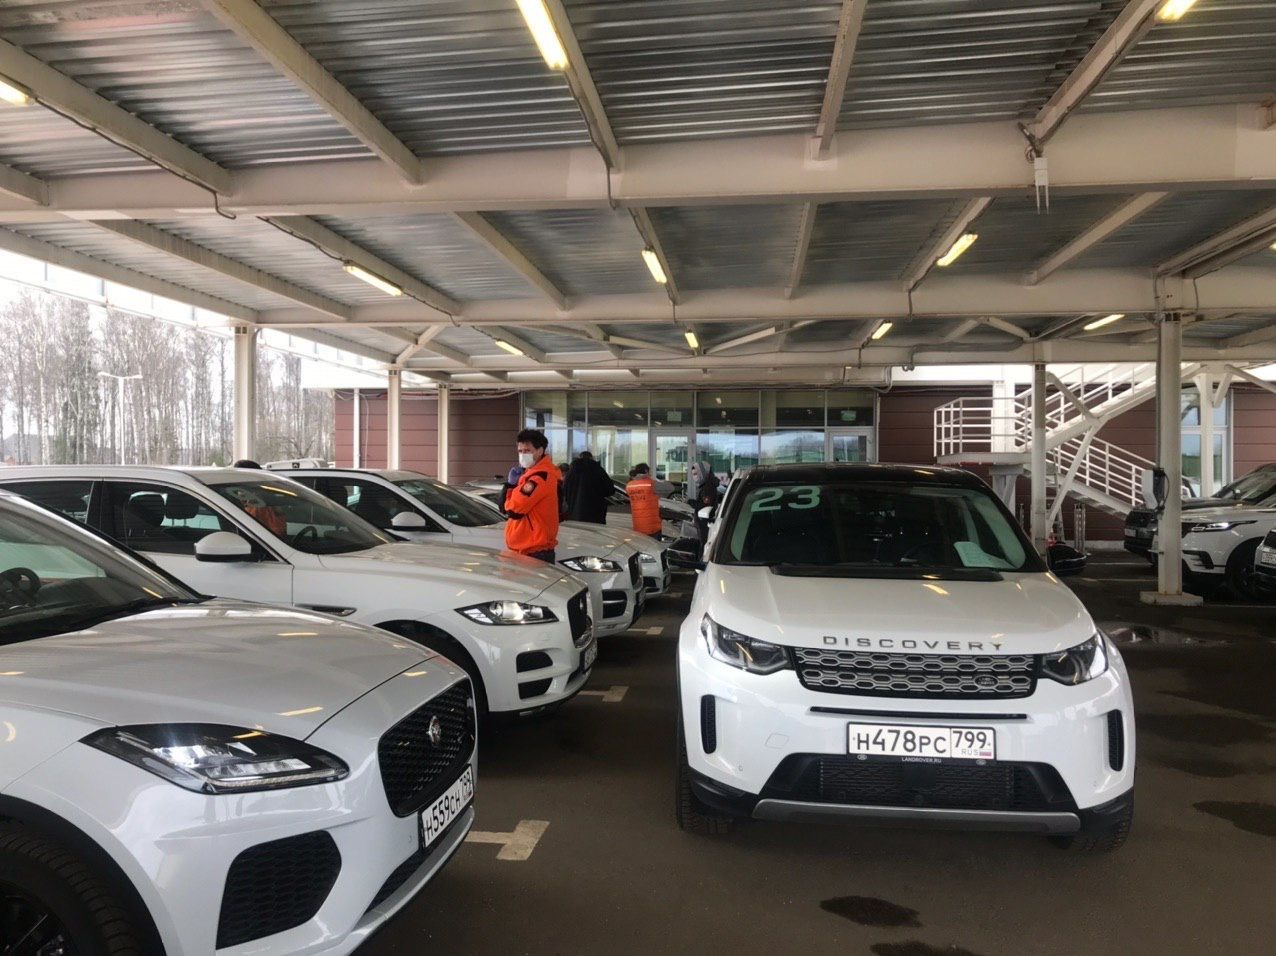 Finbar McFall, director de Experiencia al Cliente de Jaguar Land Rover, dijo: “La salud y seguridad de nuestros empleados, clientes y sus familias sigue siendo nuestra prioridad. 